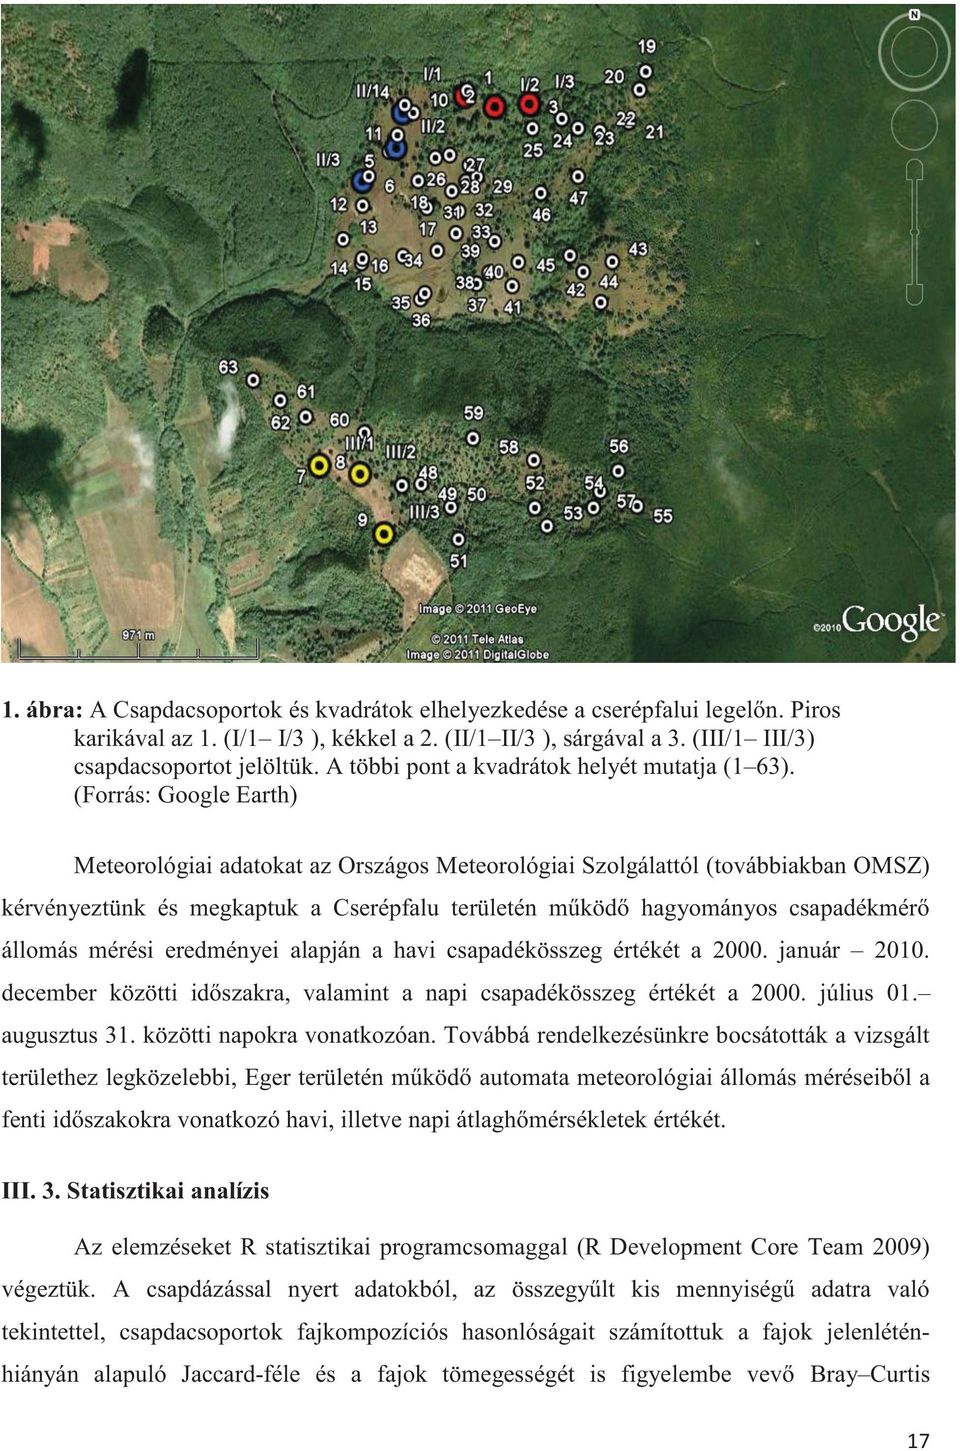 (Forrás: Google Earth) Meteorológiai adatokat az Országos Meteorológiai Szolgálattól (továbbiakban OMSZ) kérvényeztünk és megkaptuk a Cserépfalu területén működő hagyományos csapadékmérő állomás